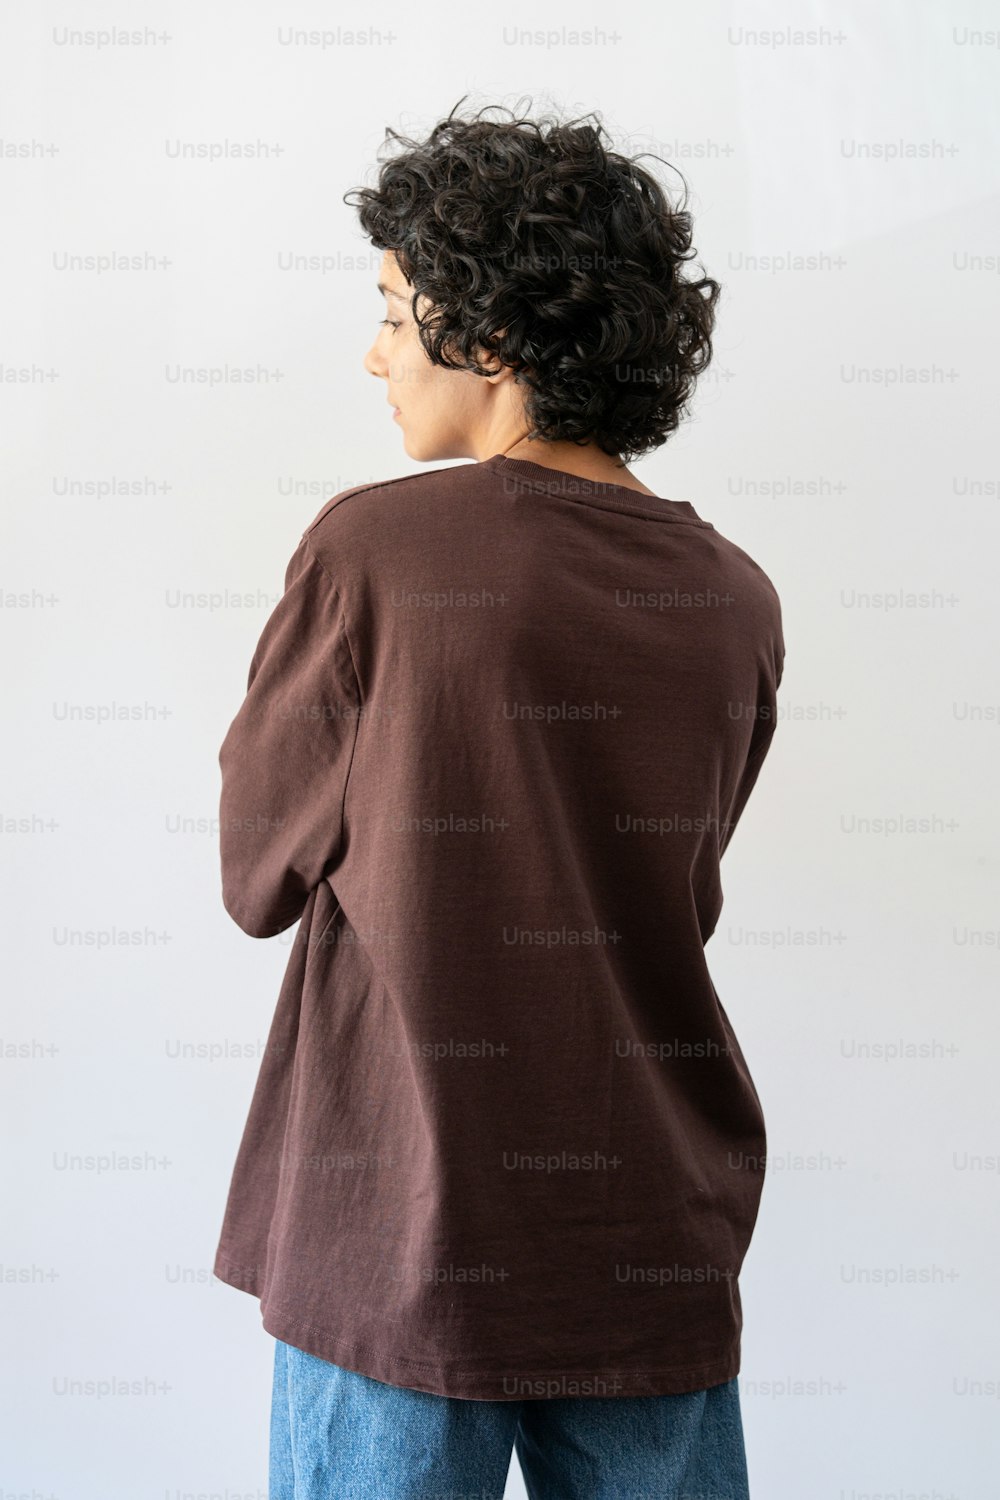 Una mujer parada frente a una pared blanca